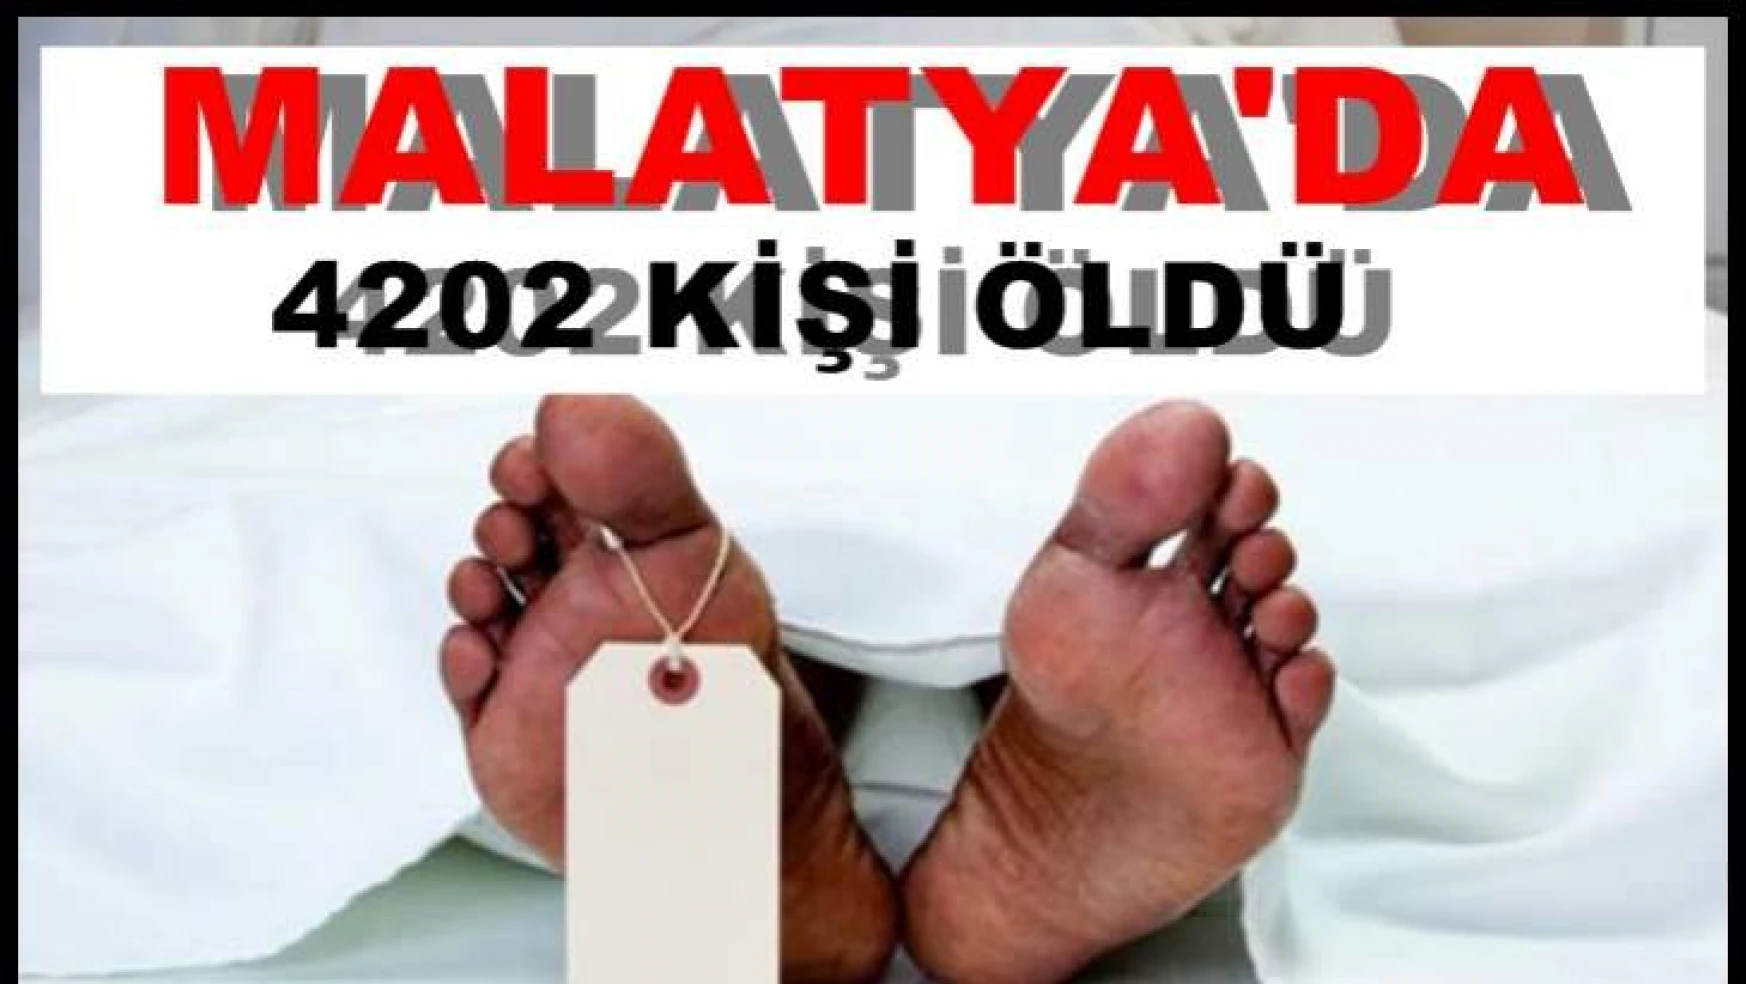 Malatya'da 2018 yılında ölen kişi sayısı 4 202 oldu.